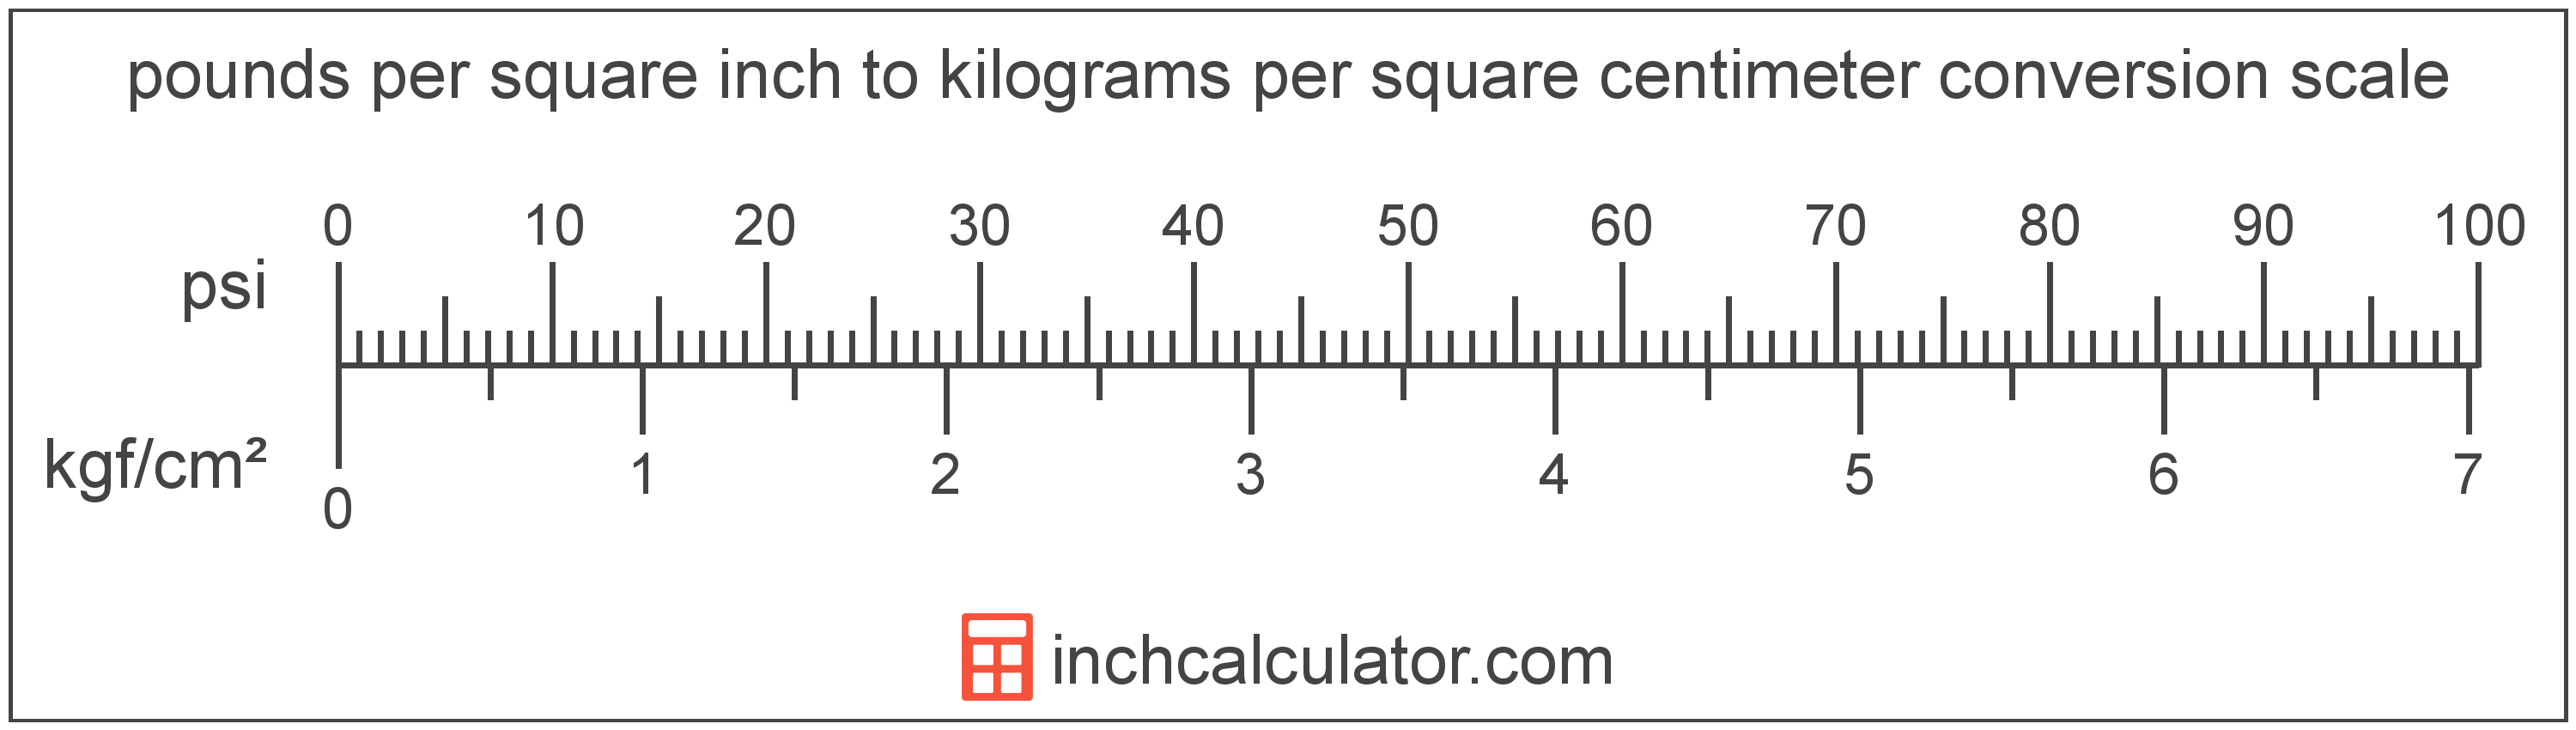 conversion scale showing kilograms per square centimeter and equivalent pounds per square inch pressure values